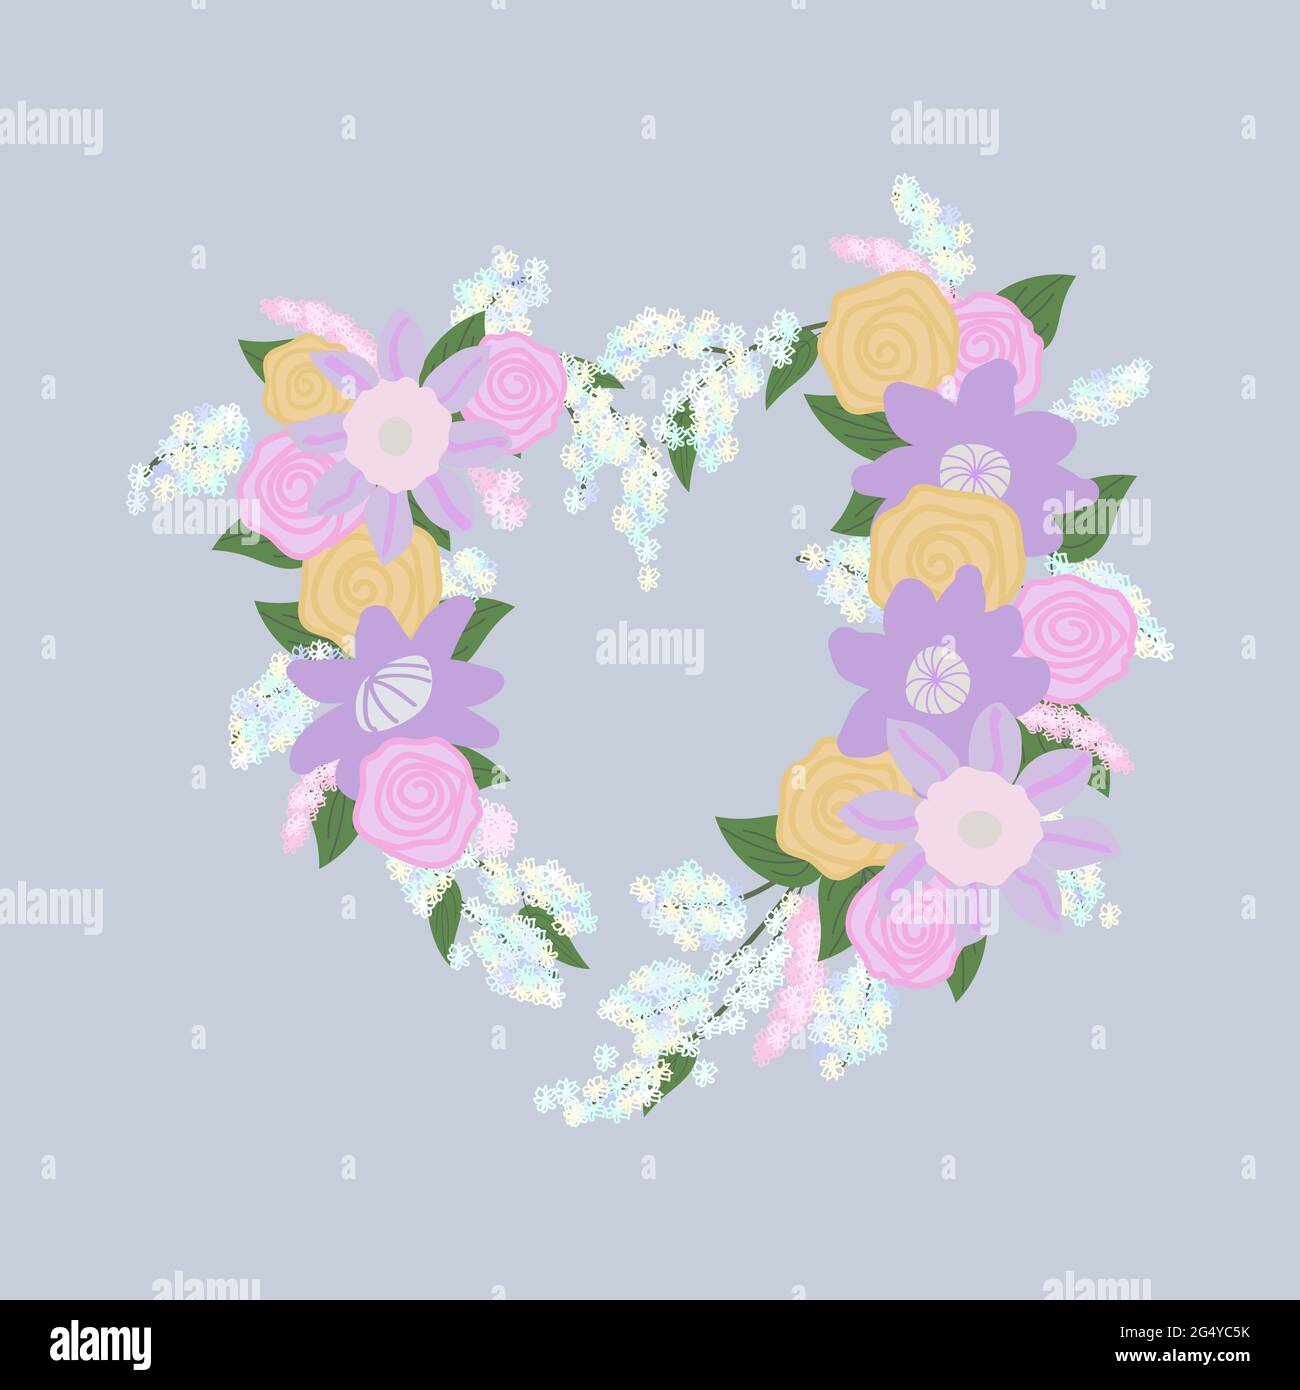 fiori di clematis rosa e viola, rose rosa e gialle e infiorescenze di fiori bianchi e rosa con foglie verdi sono disposti in un cuore s. Illustrazione Vettoriale